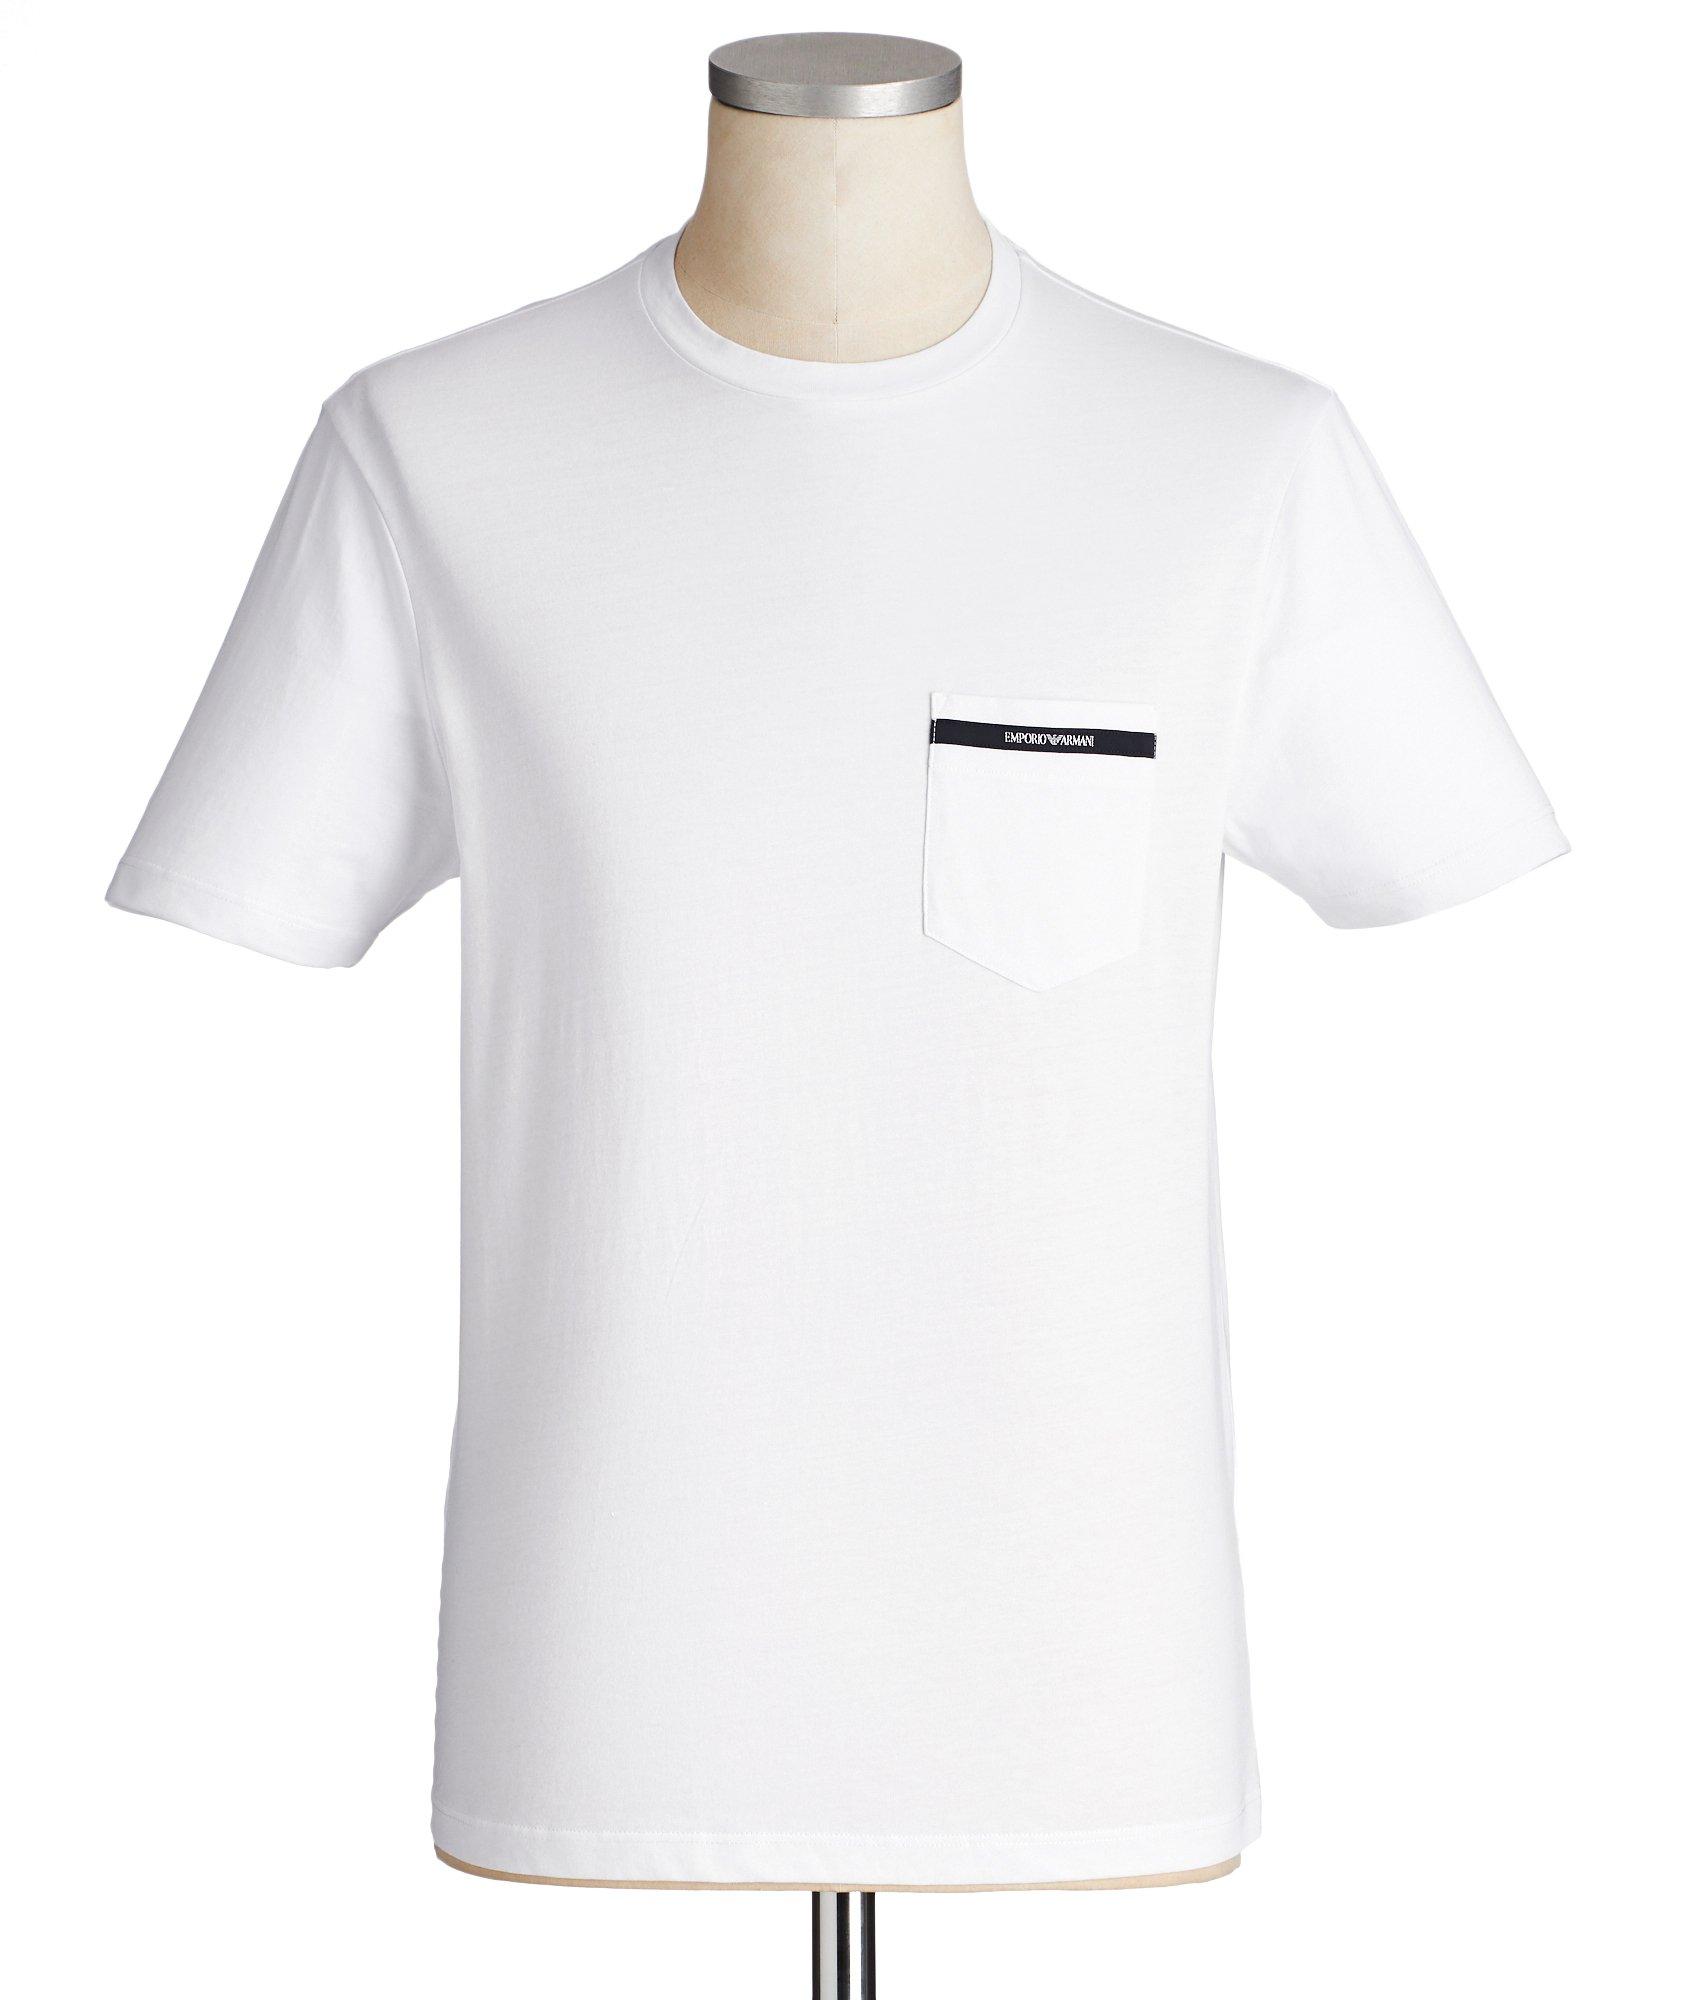 Cotton T-Shirt image 0